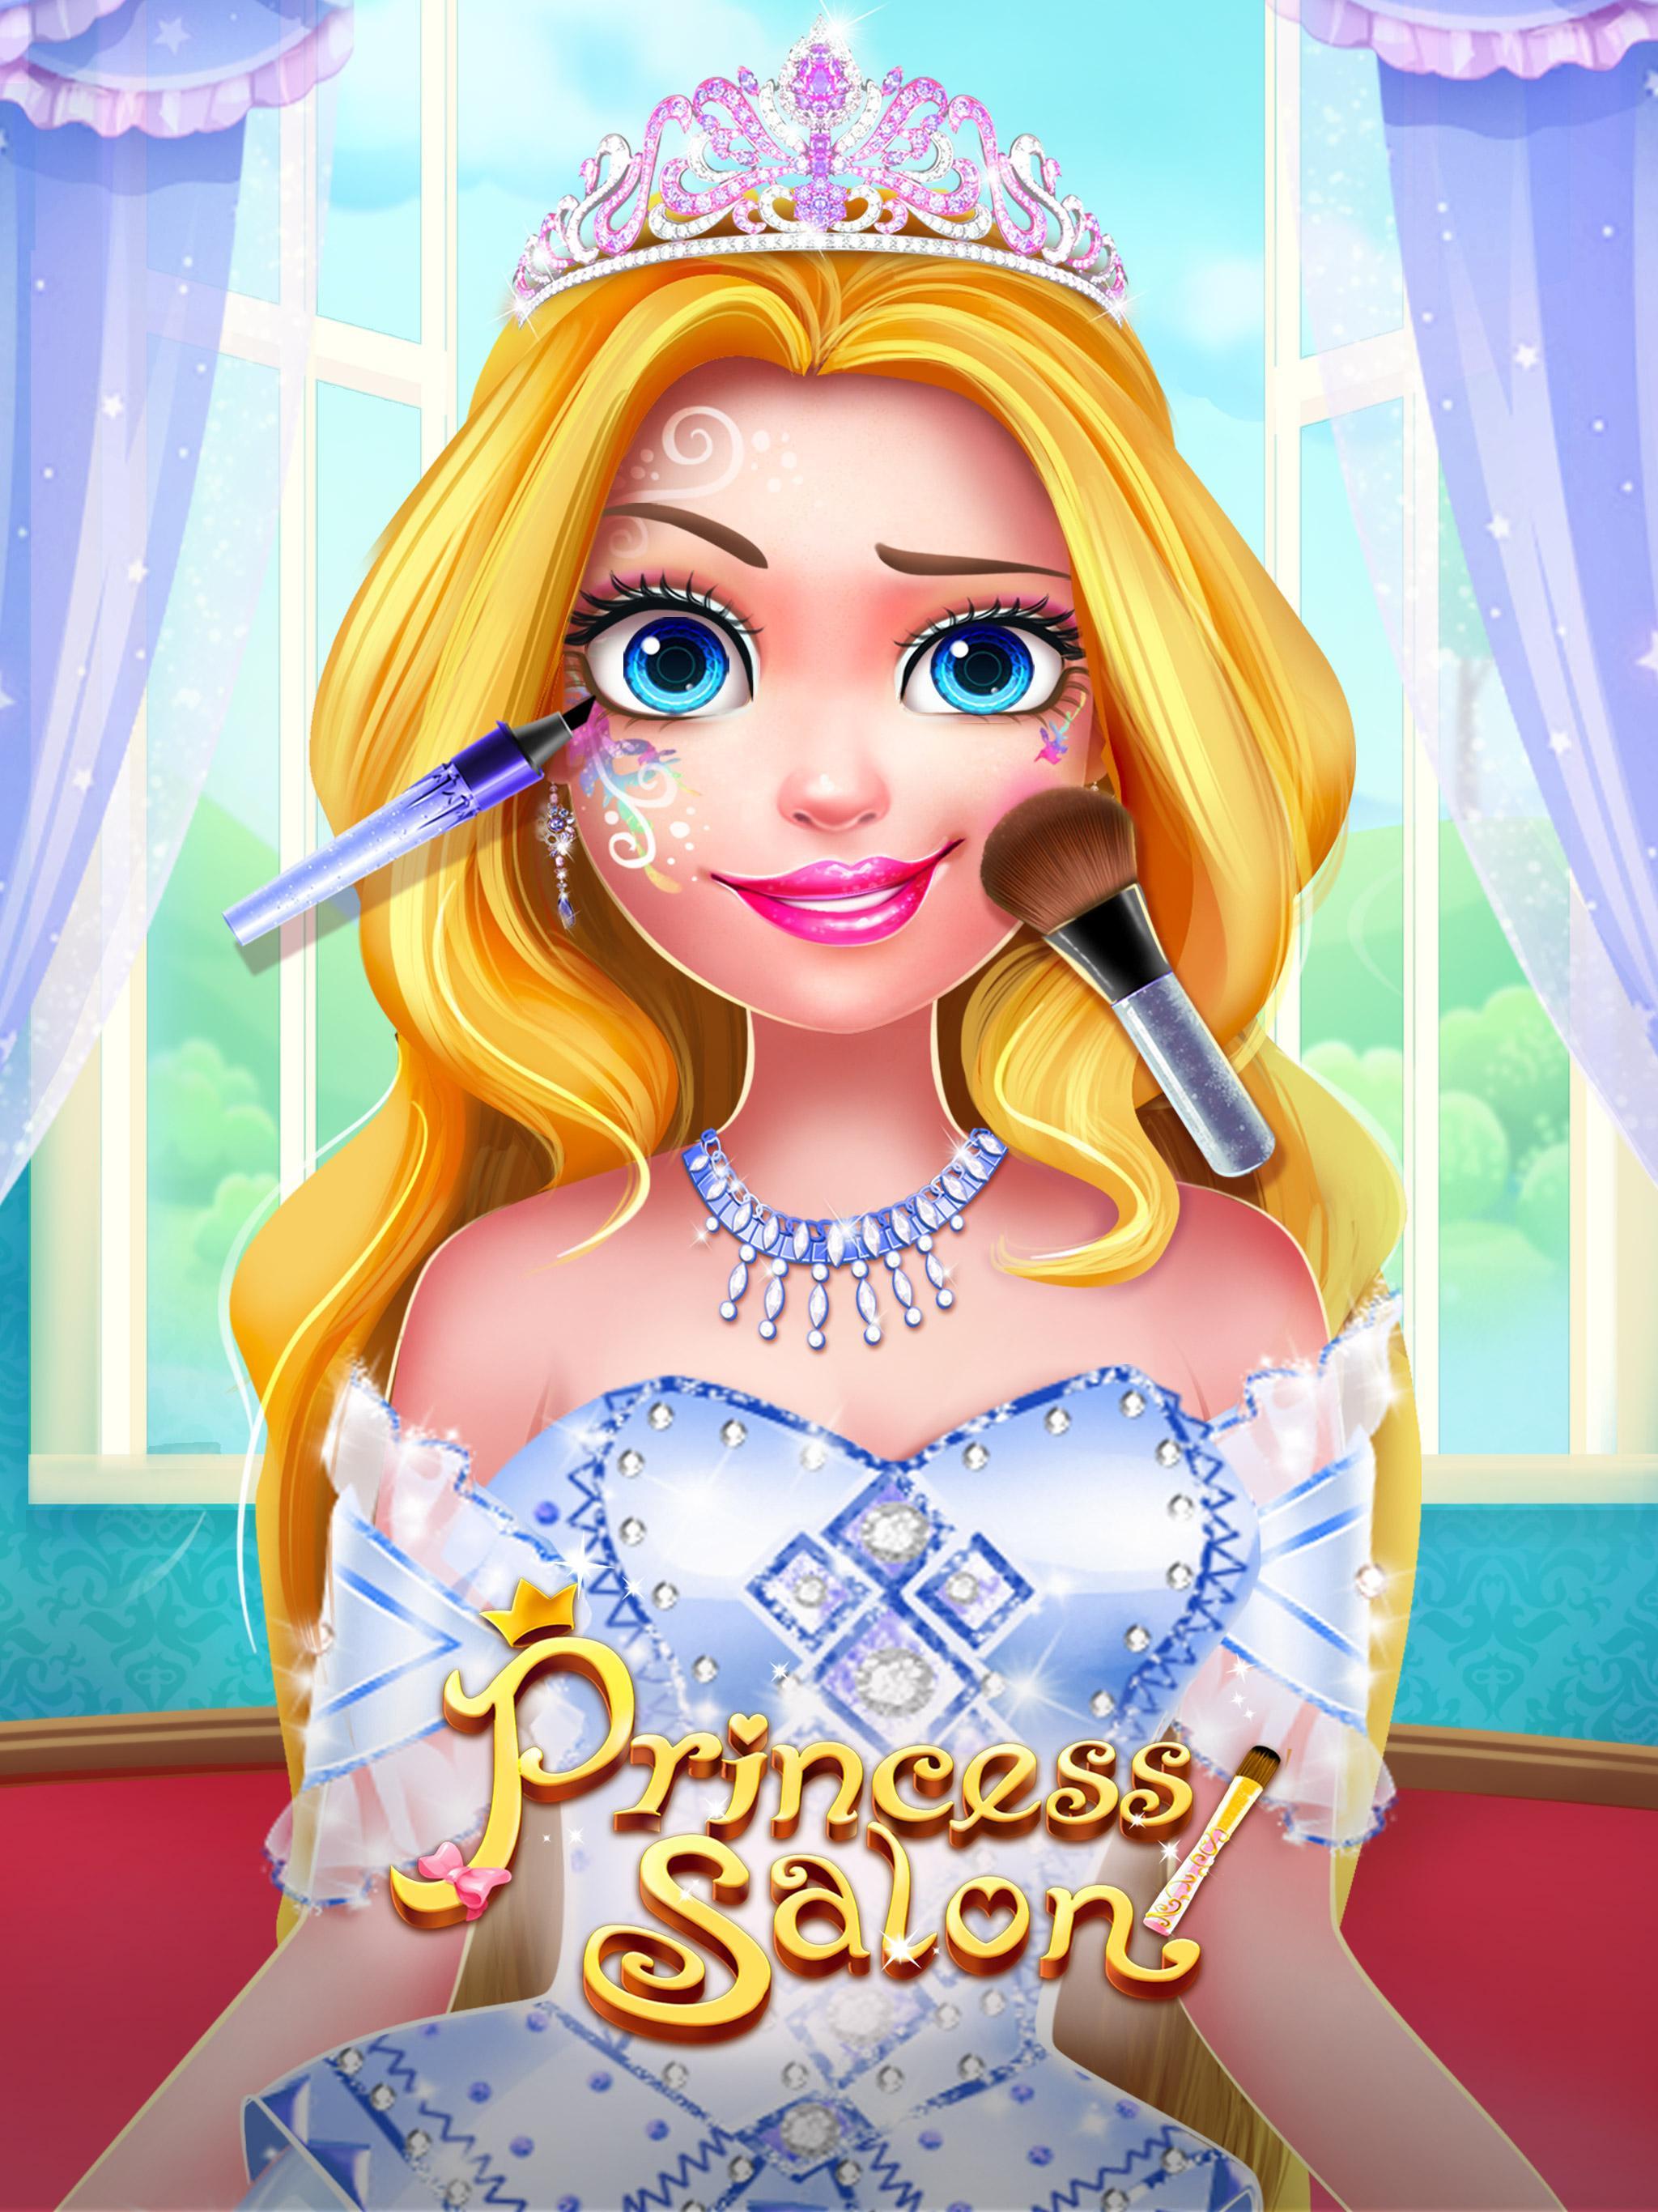 Screenshot 1 of Princess Salon 2 - เกมสำหรับเด็กผู้หญิง 1.5